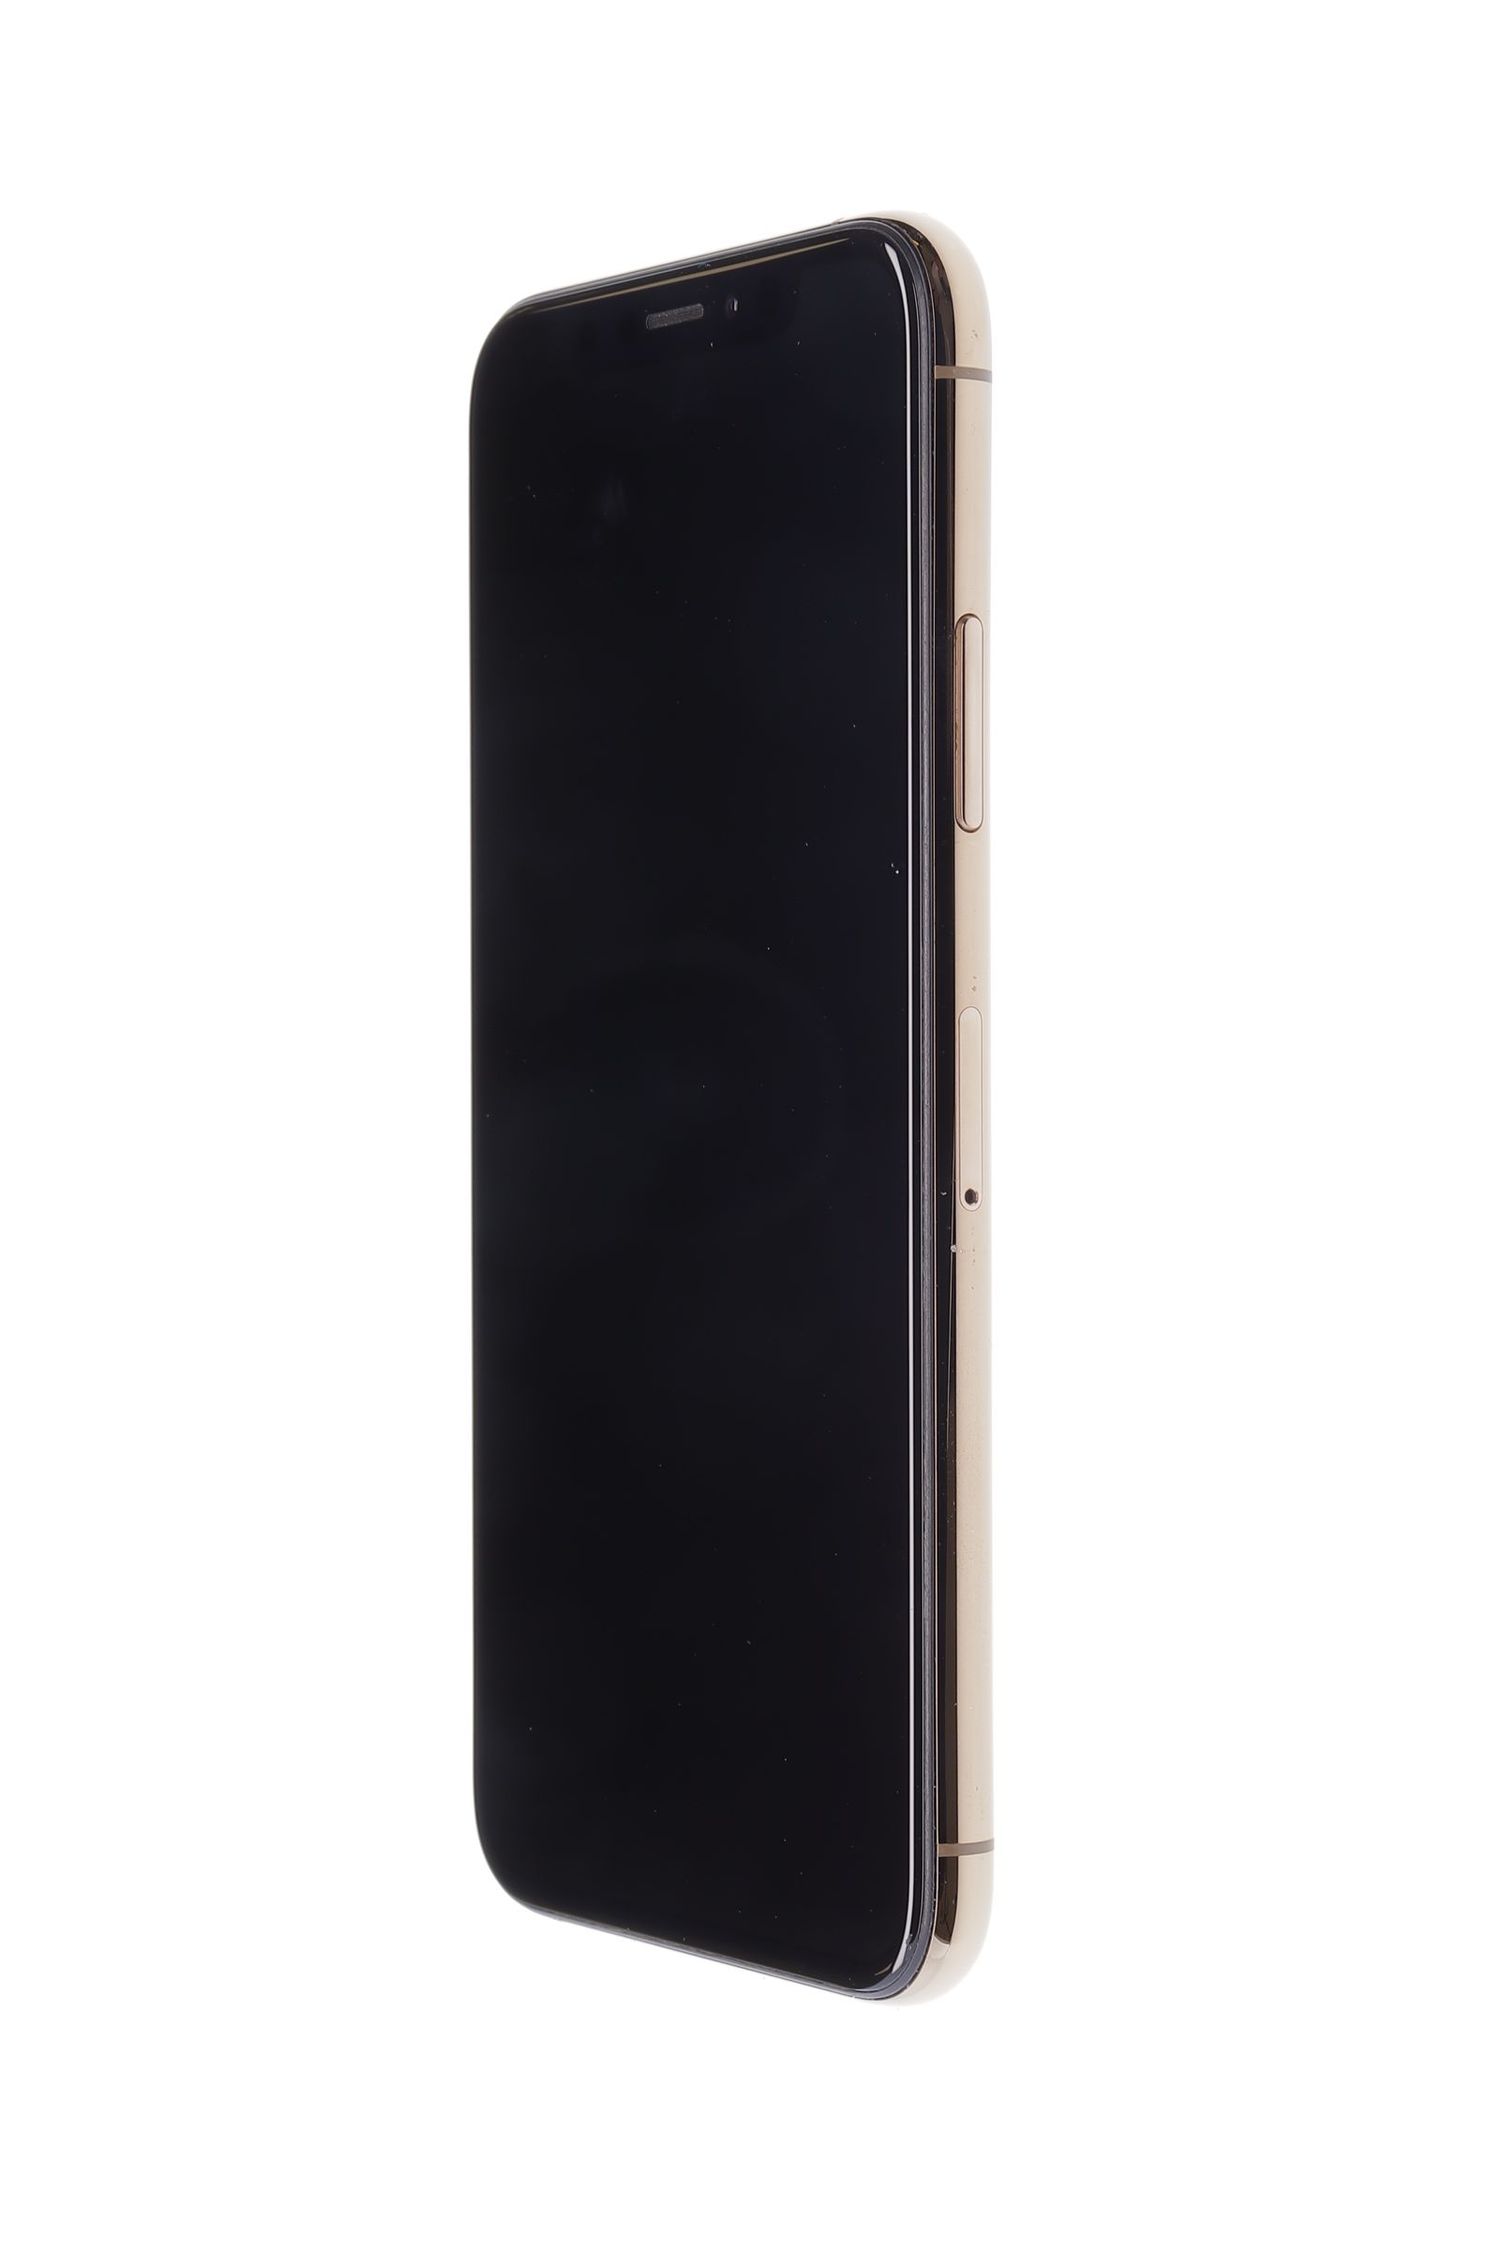 Κινητό τηλέφωνο Apple iPhone XS, Gold, 64 GB, Excelent